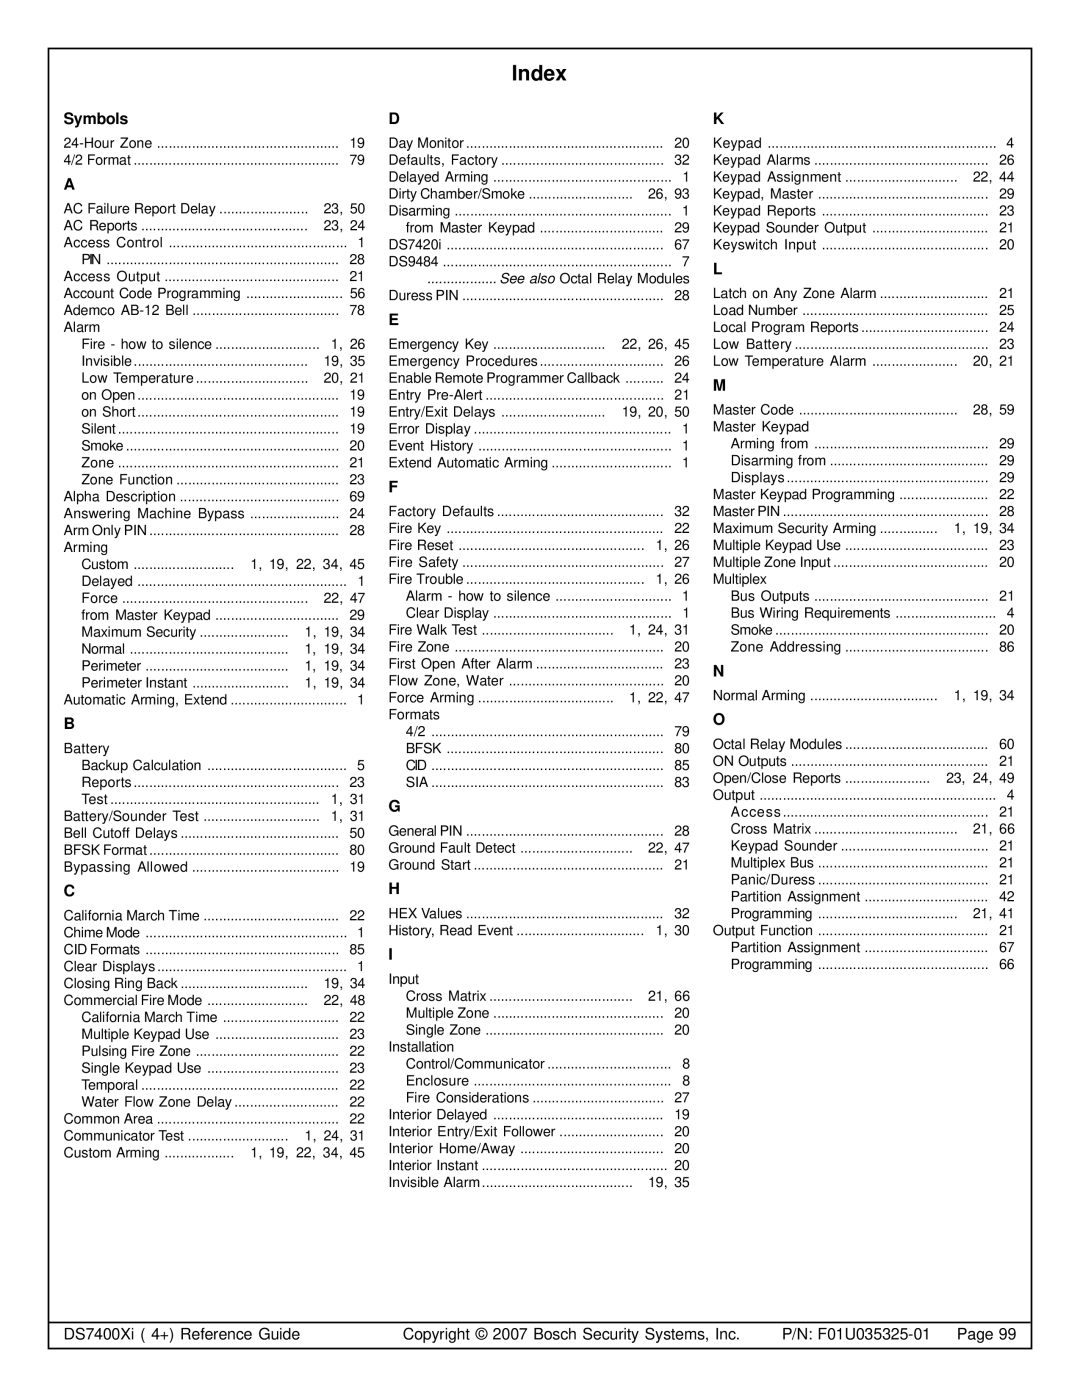 Bosch Appliances DS7445I, DS7447E, DS7400XI manual Index, Symbols 